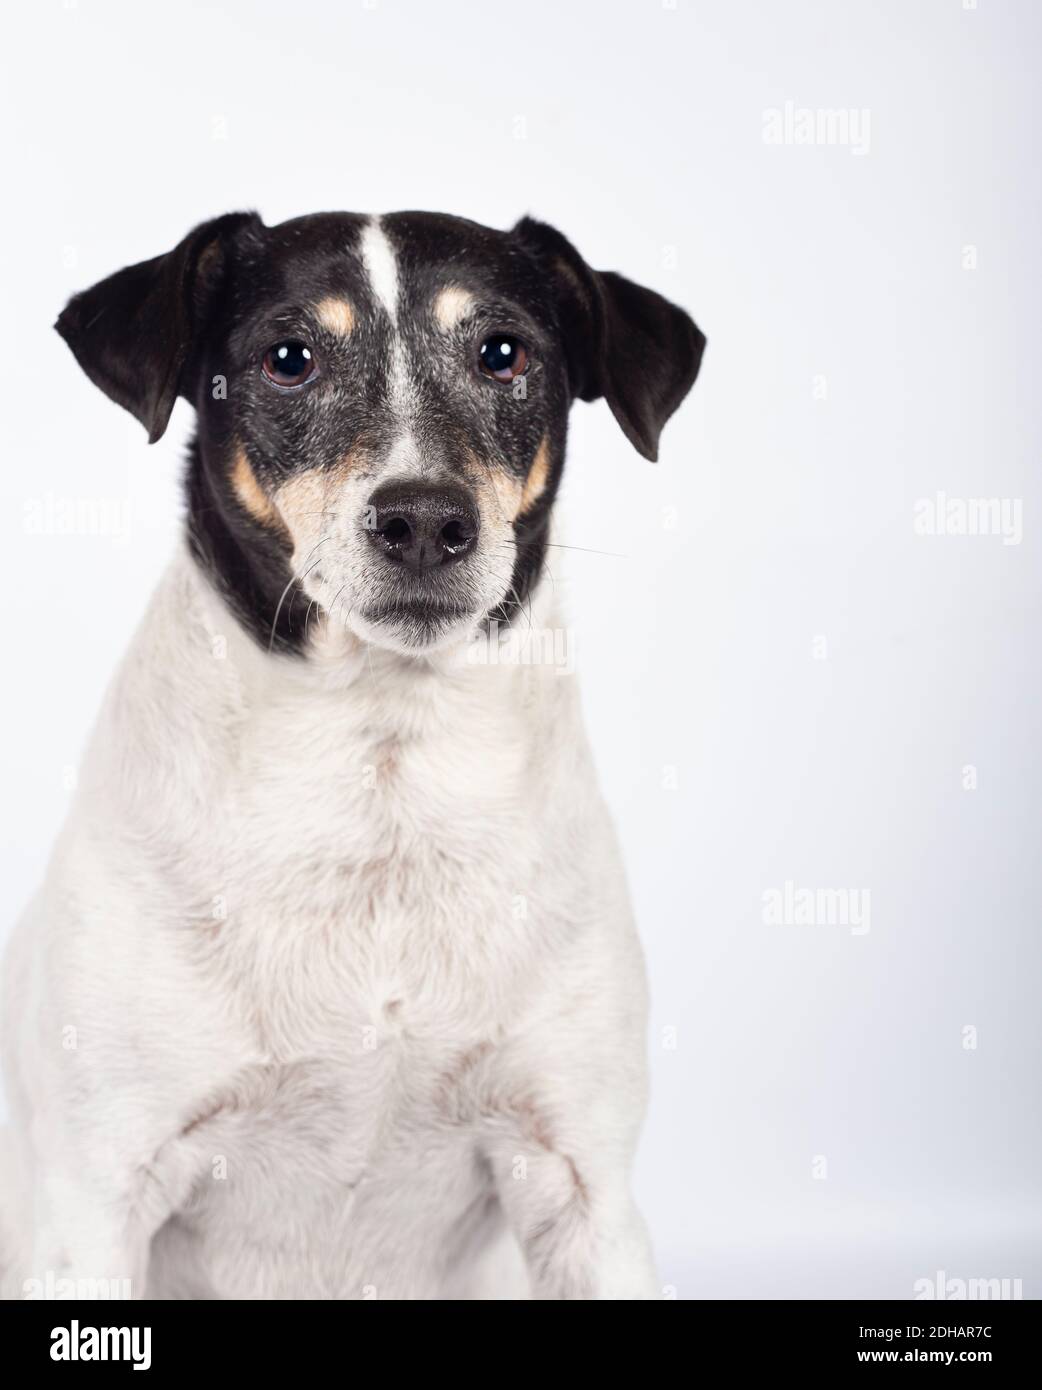 Portrait de chien errant en studio photo sur fond blanc pour adoption. Journée internationale des animaux sans abri Banque D'Images